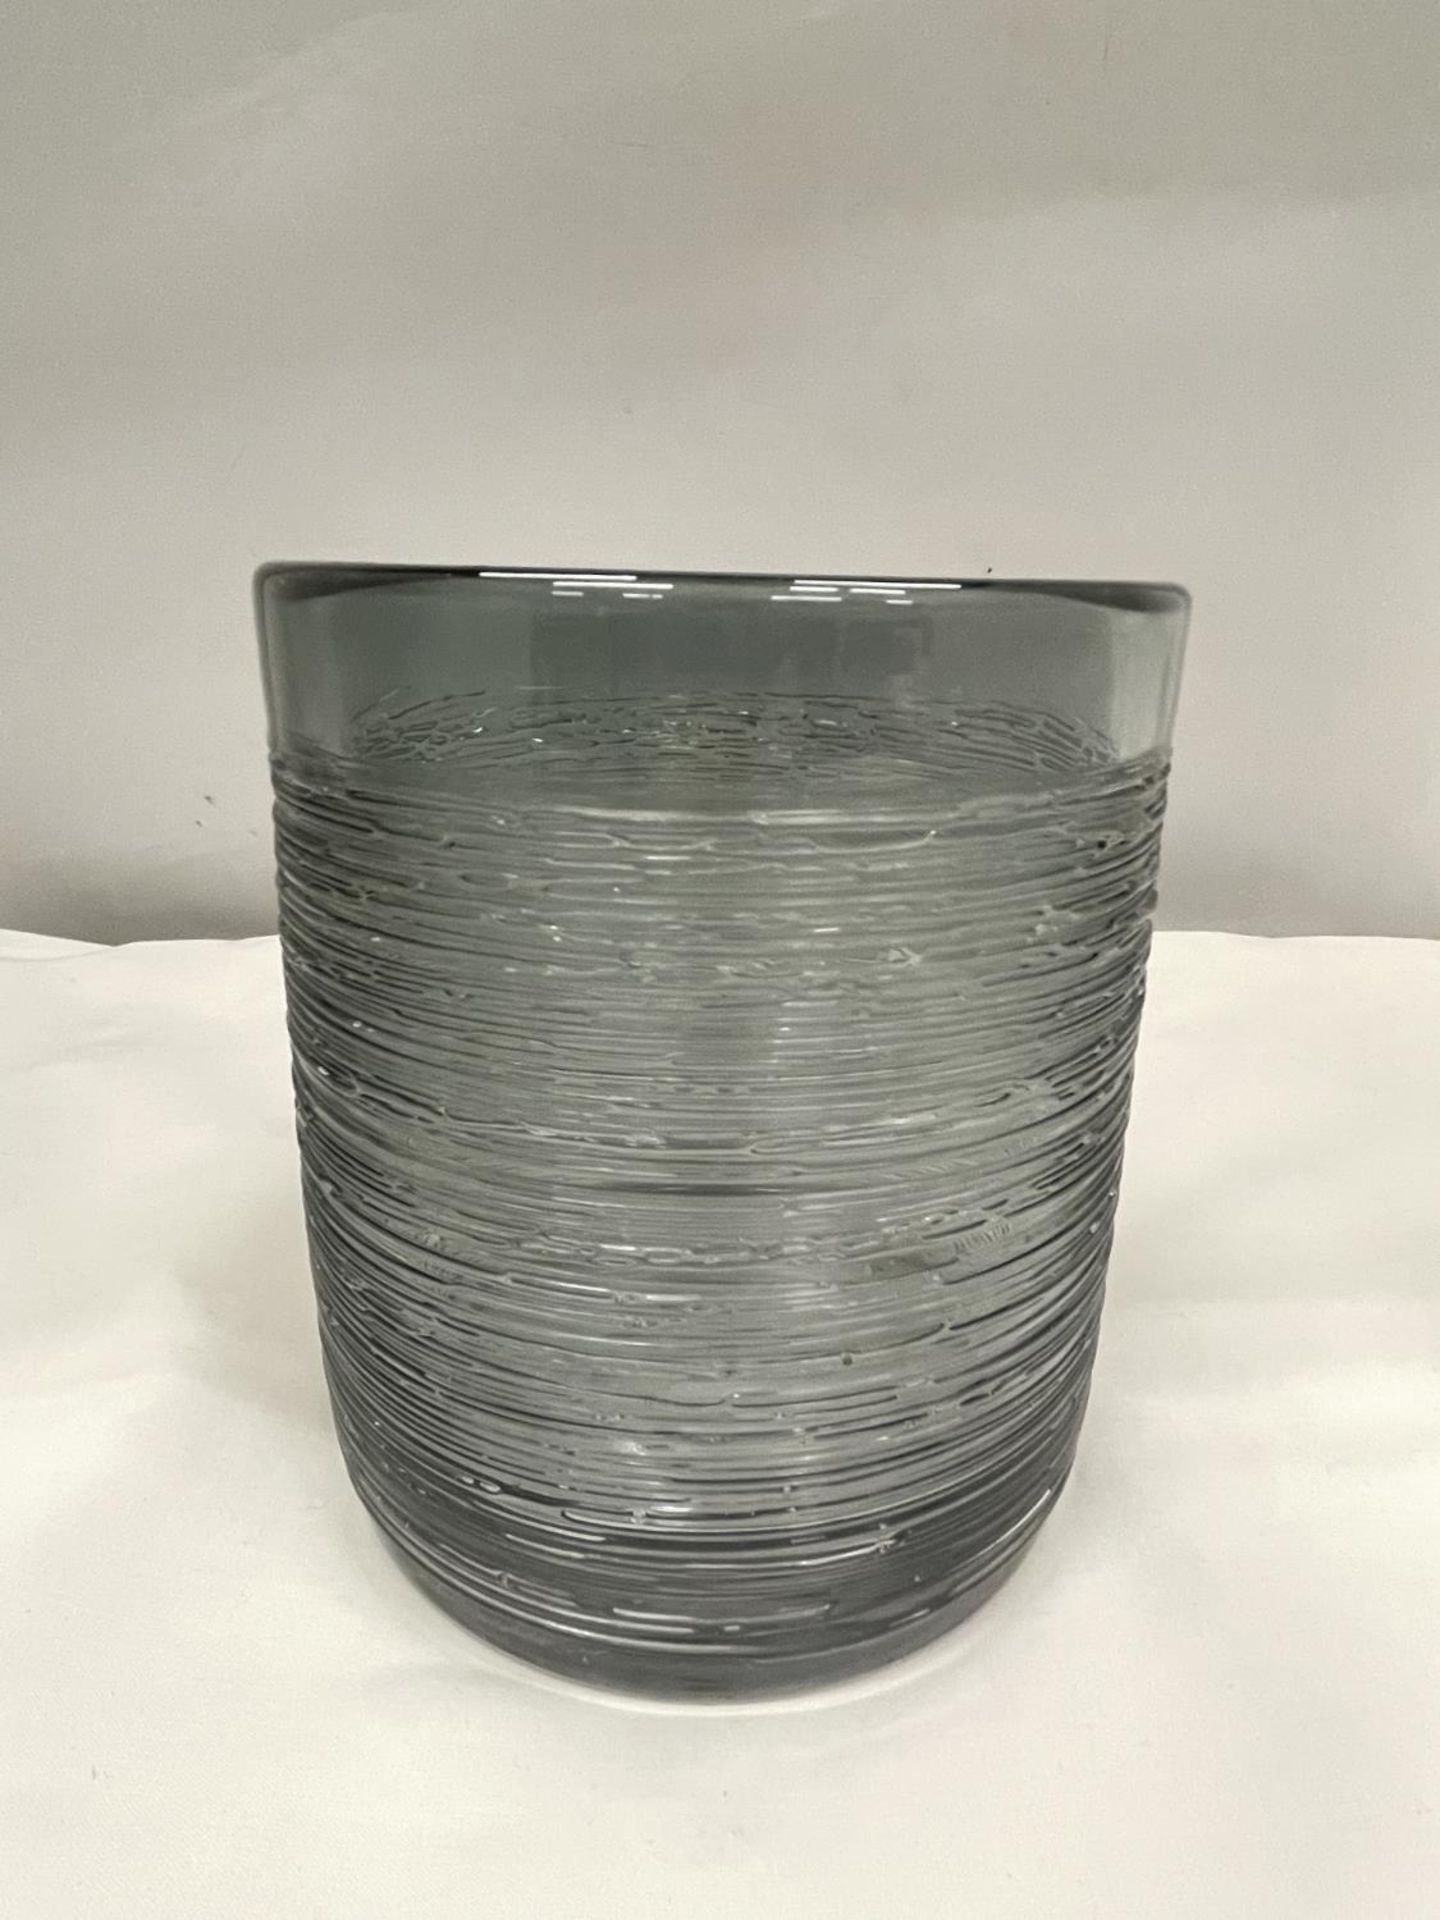 A SPUN GLASS VASE POSSIBLY BY BENGT EDENFELDT 15CM HIGH - Image 2 of 5